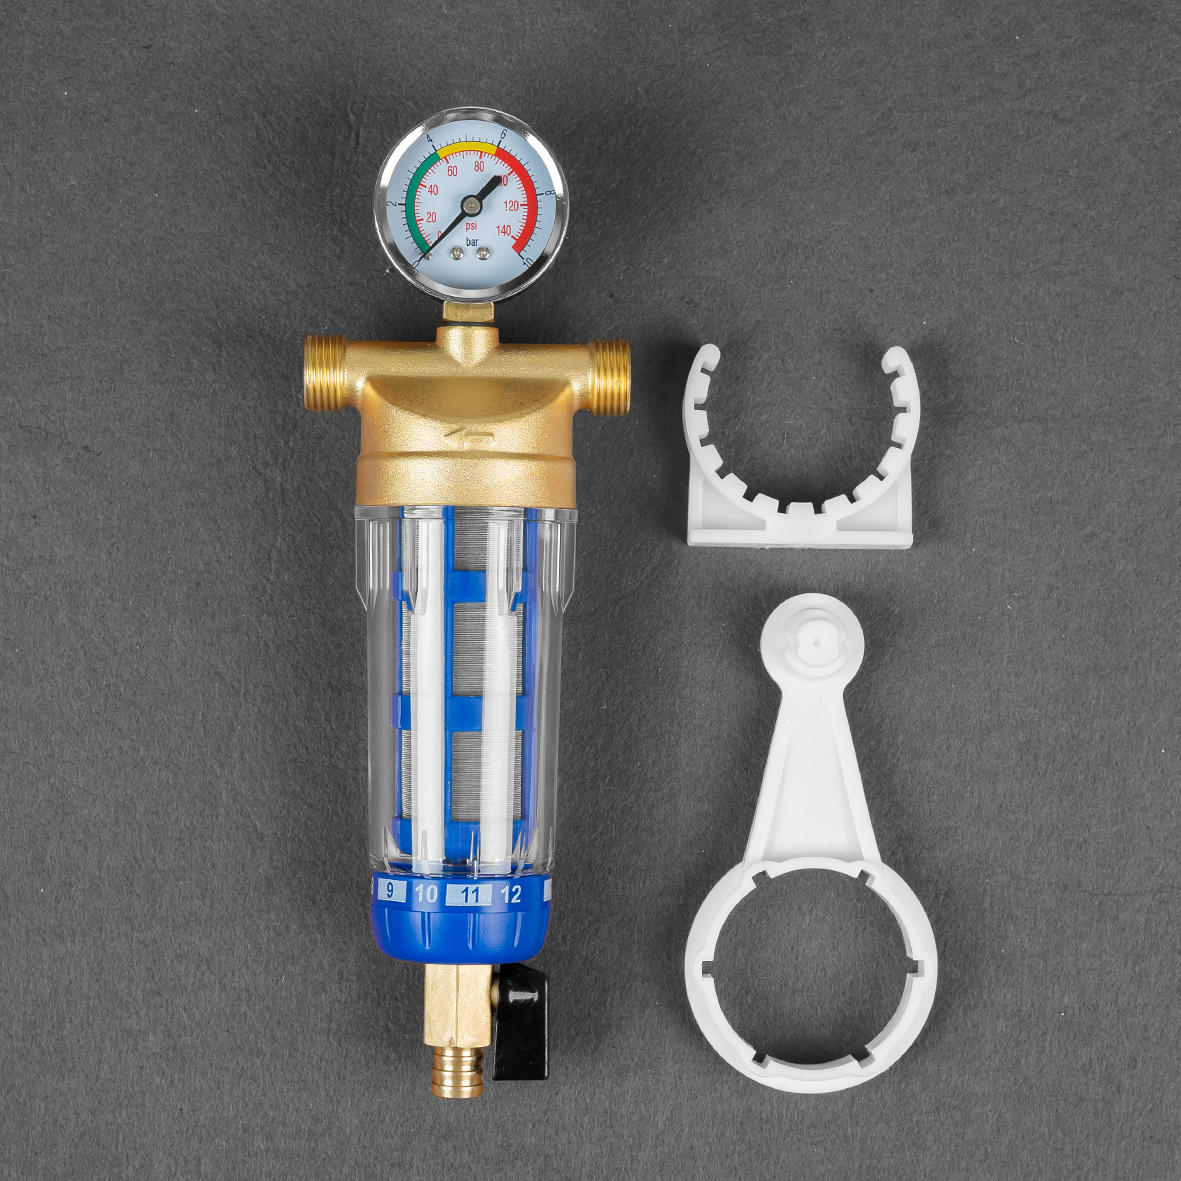 Thiết bị lọc nước đầu nguồn – lọc nước sinh hoạt có đồng hồ áp – Hàng chính hãng